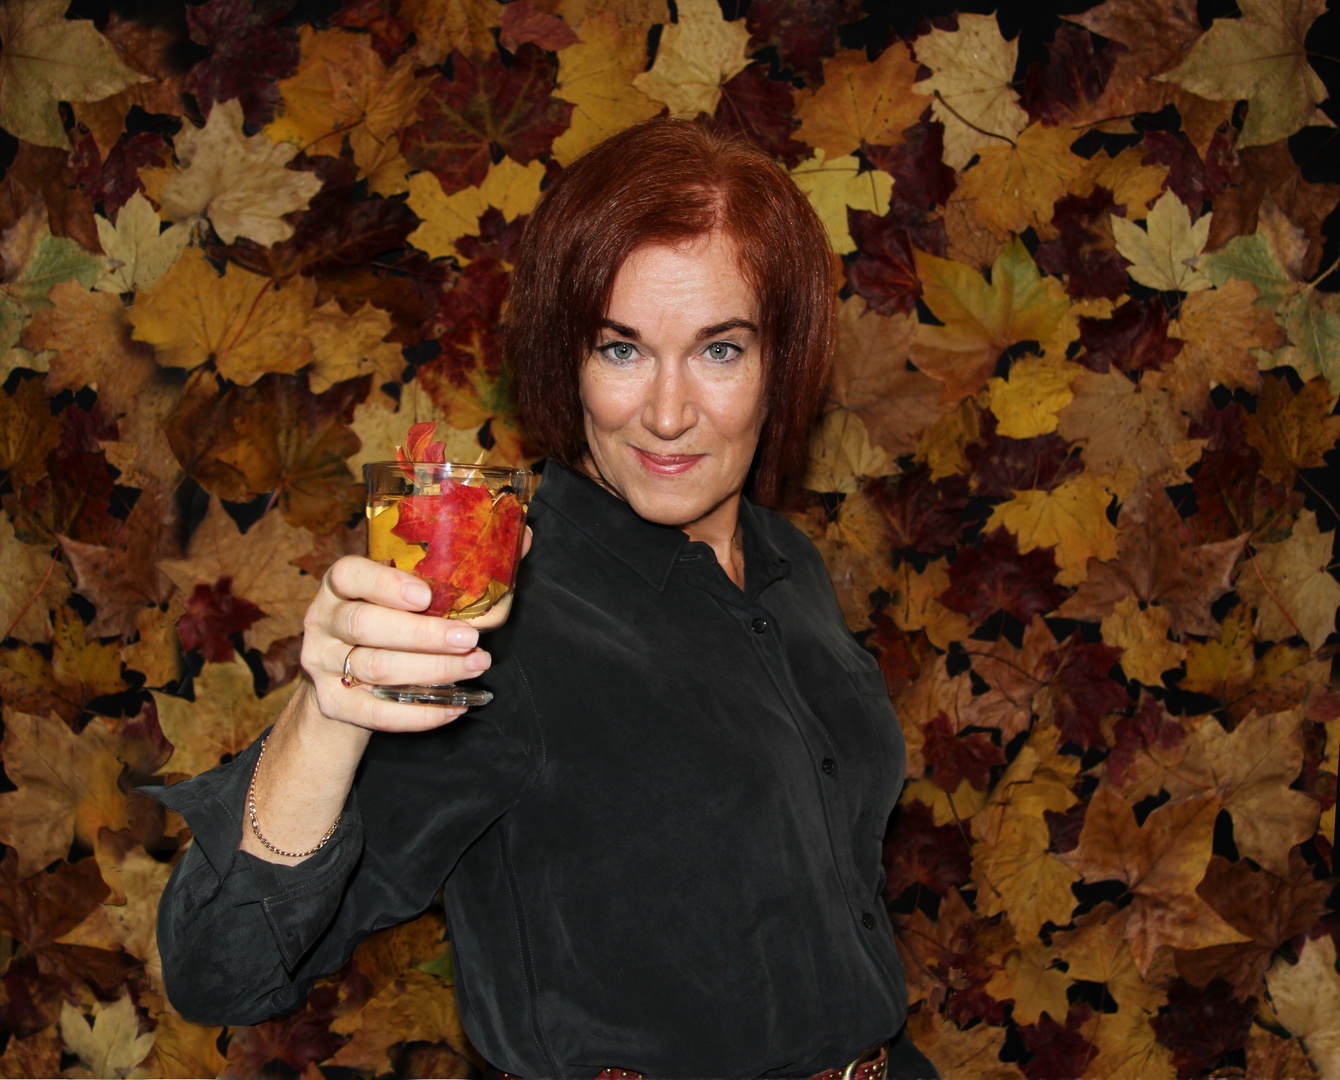 Autumn cocktail: :-)